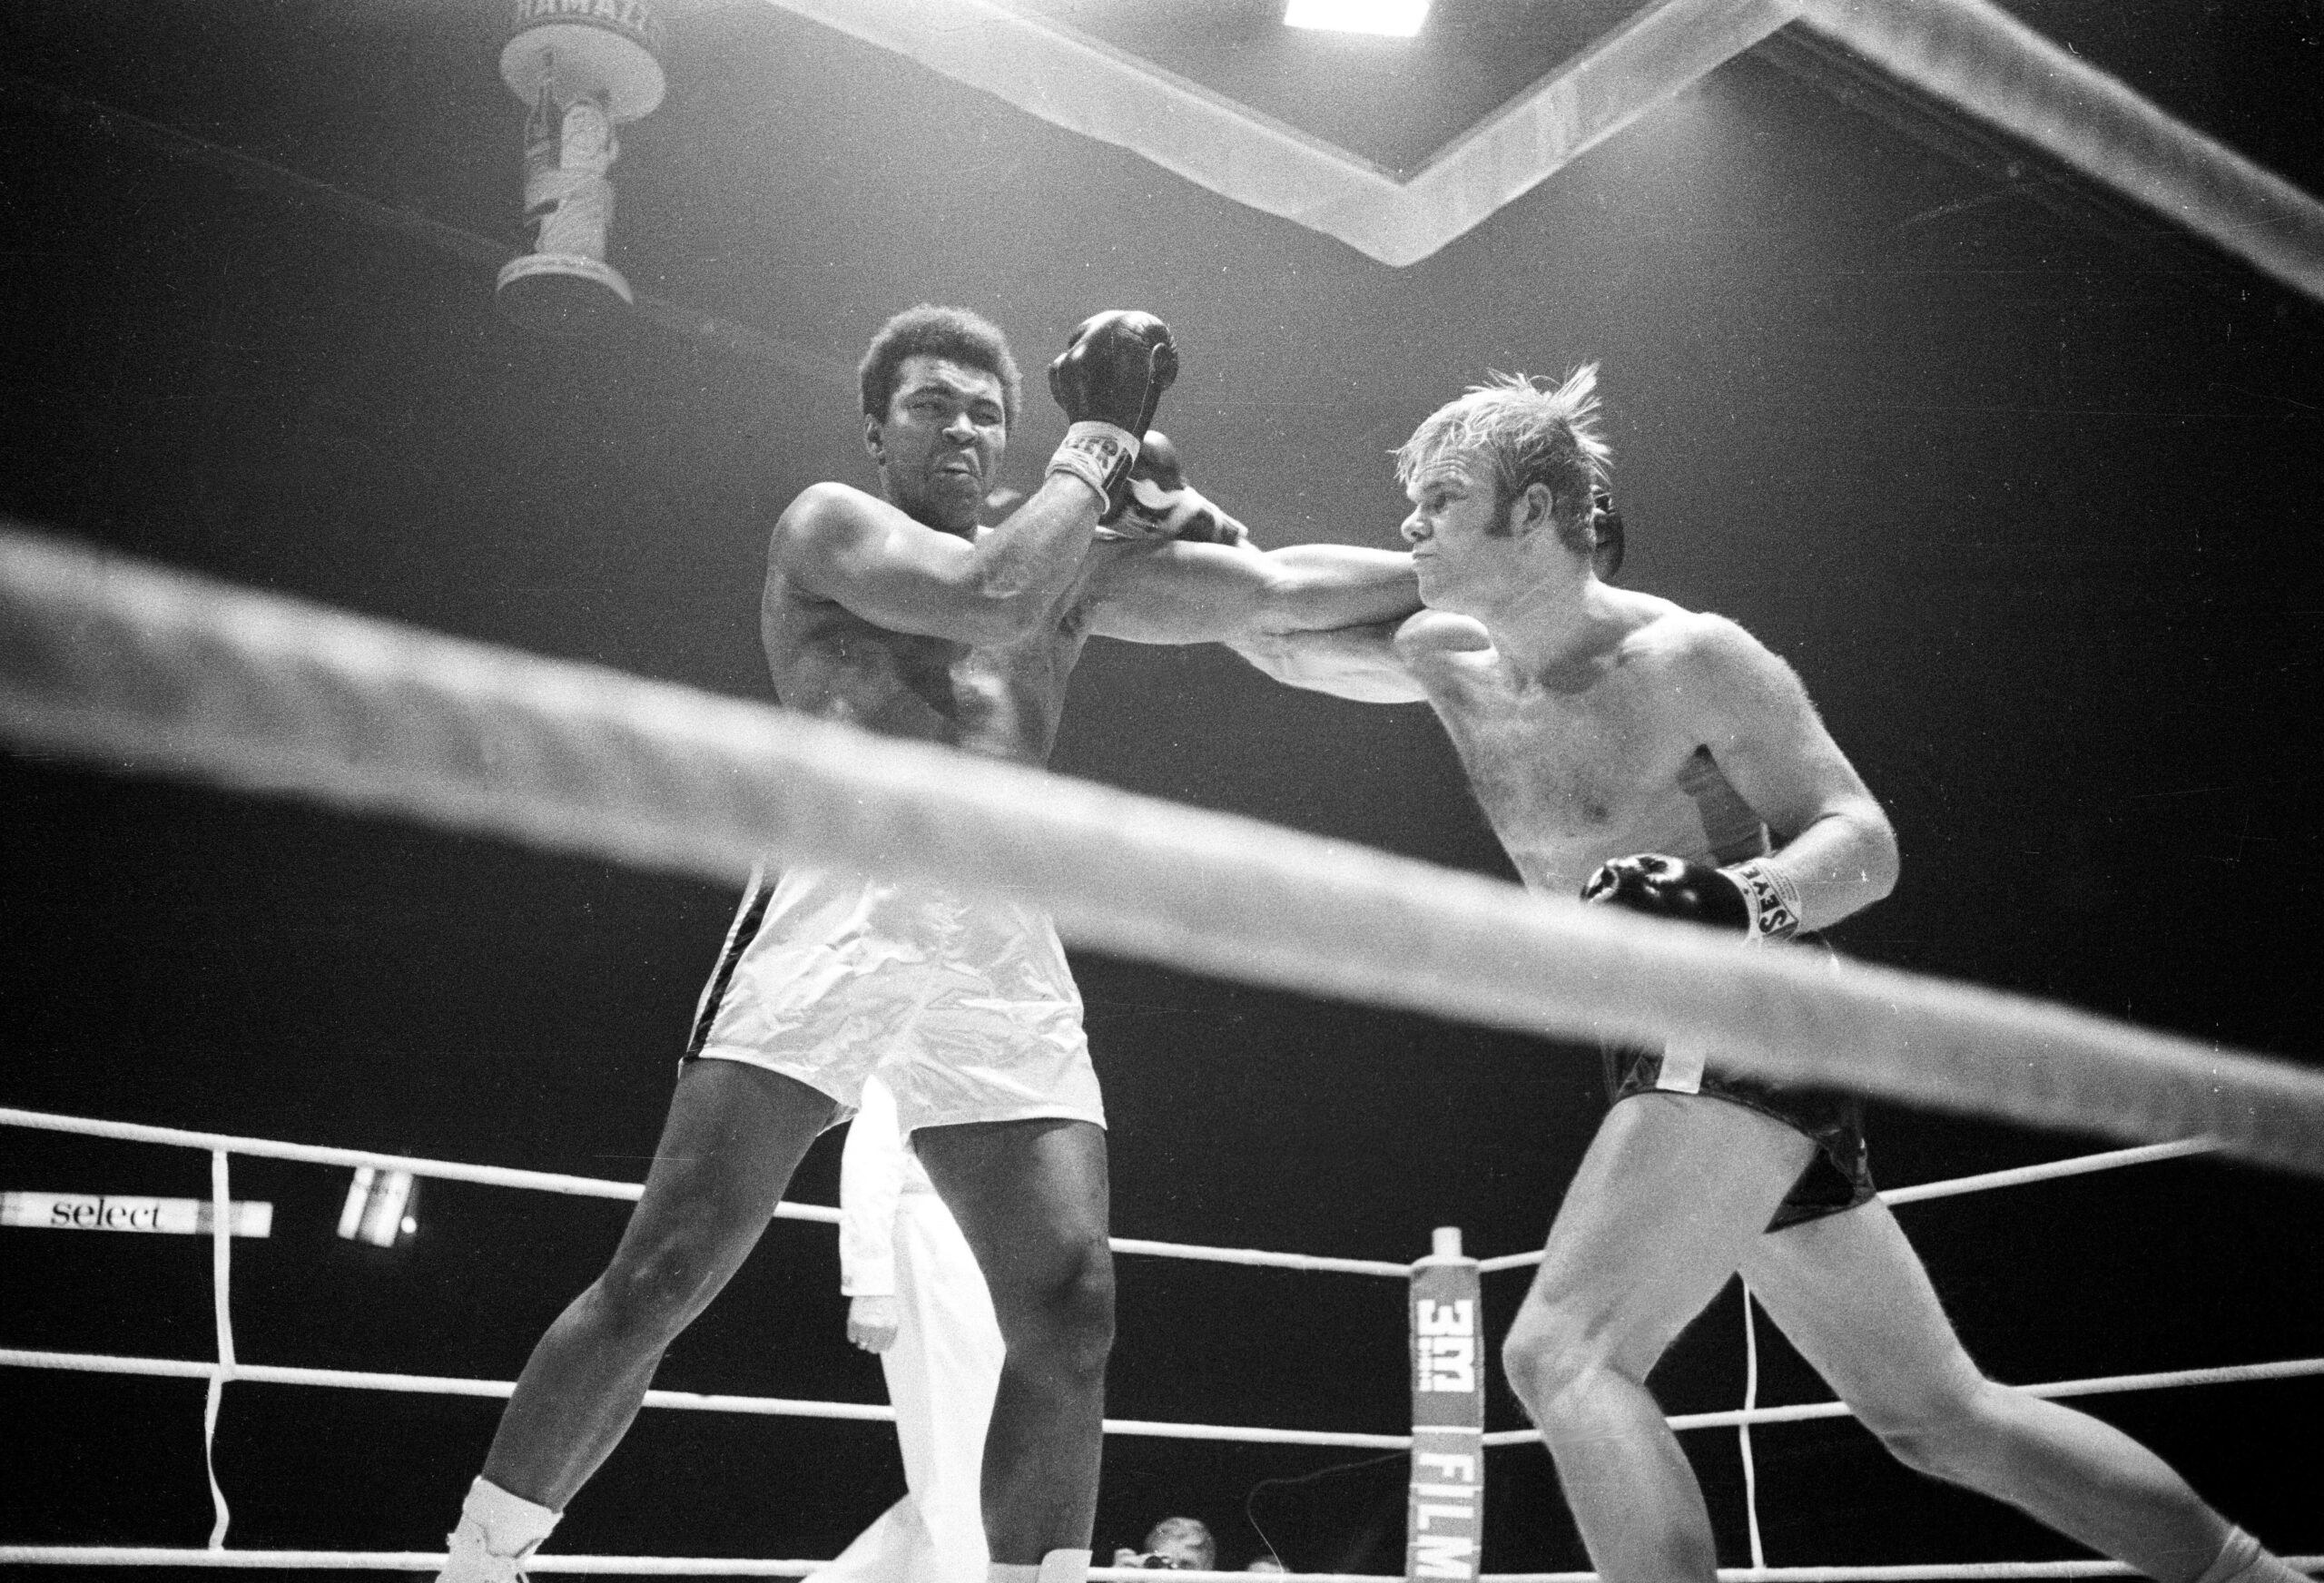 In December 1971, Jürgen Blin met Muhammad Ali in the ring.